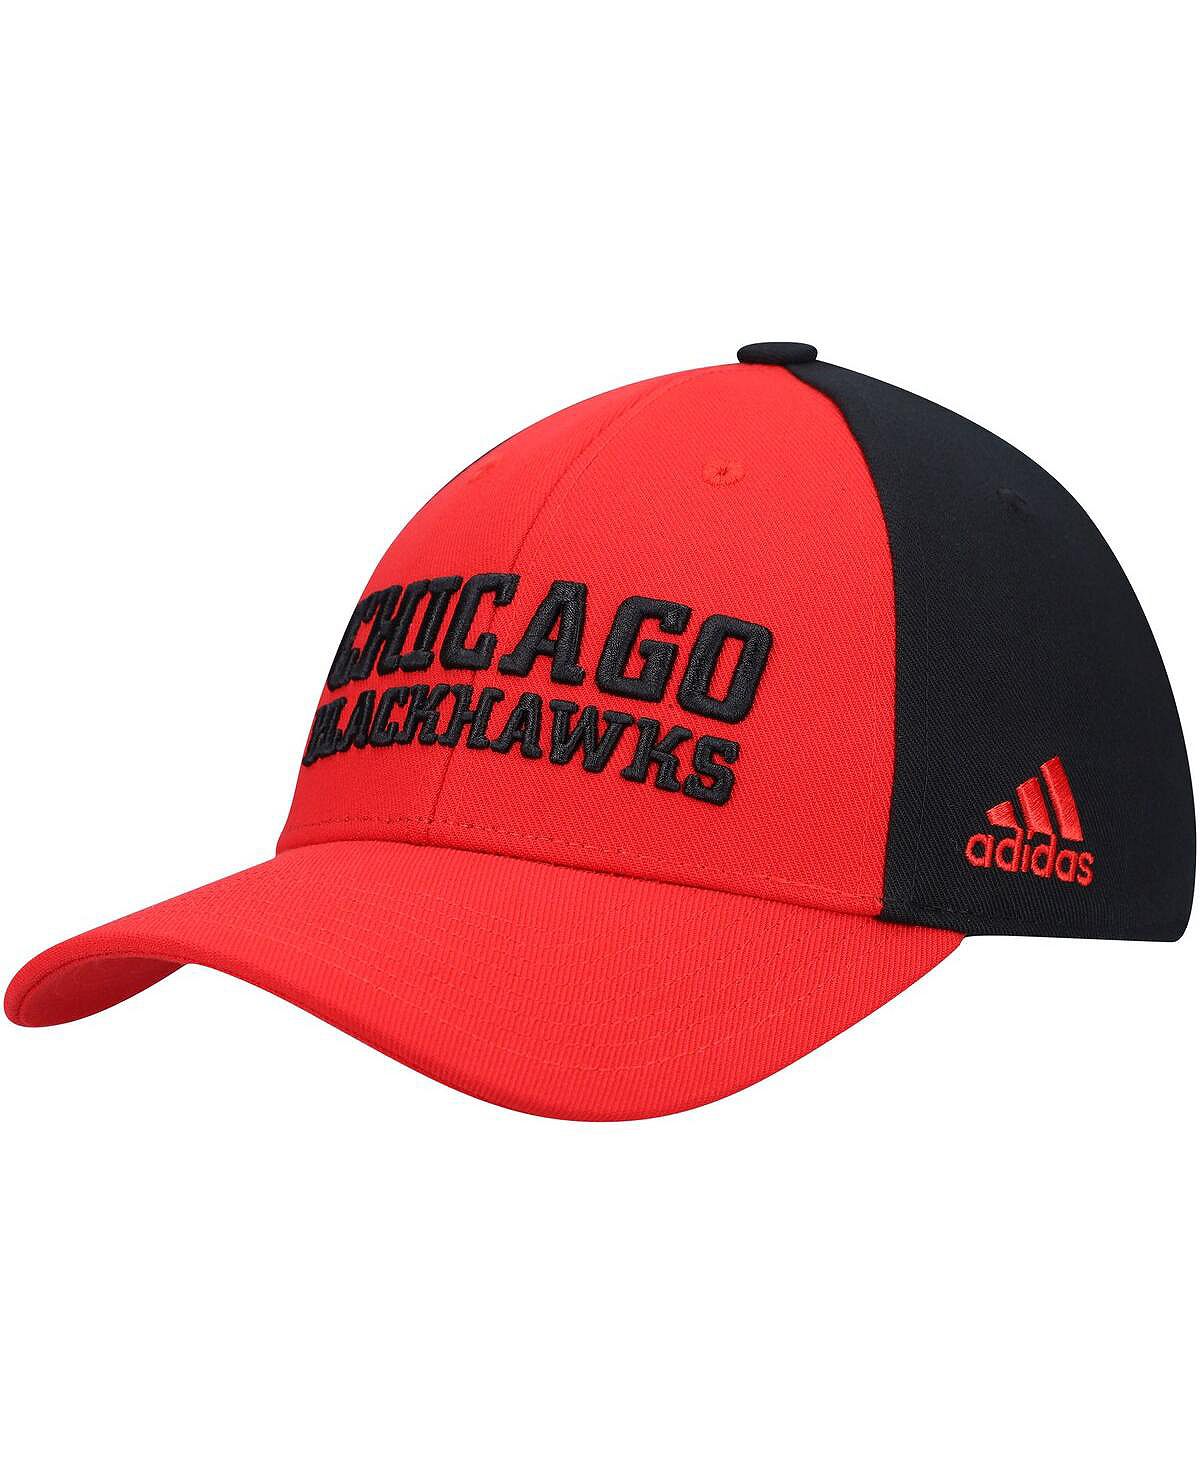 мужская красная фирменная регулируемая кепка chicago blackhawks original six fanatics Мужская красная регулируемая кепка для раздевалки Chicago Blackhawks adidas